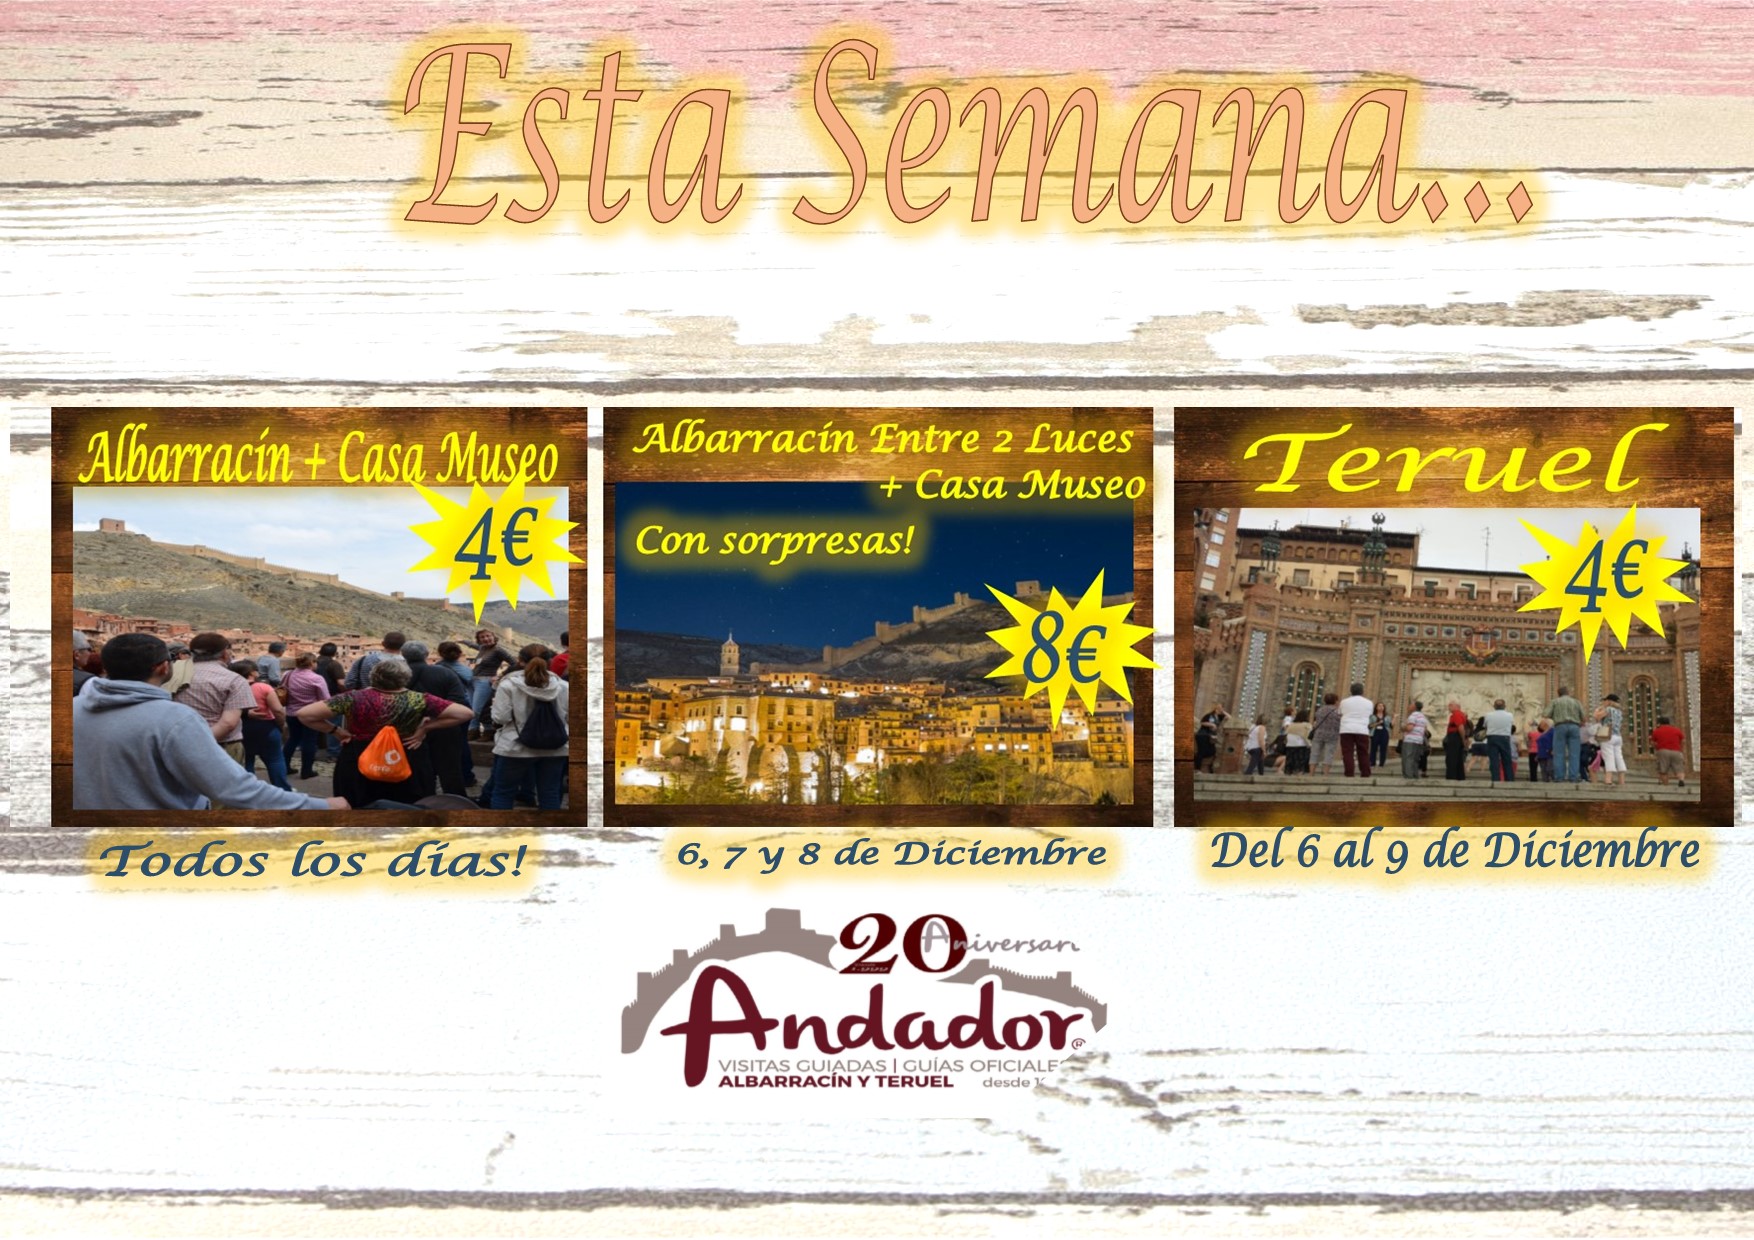 Para el Puente de Diciembre…planes en Albarracín y Teruel! Te esperamos!